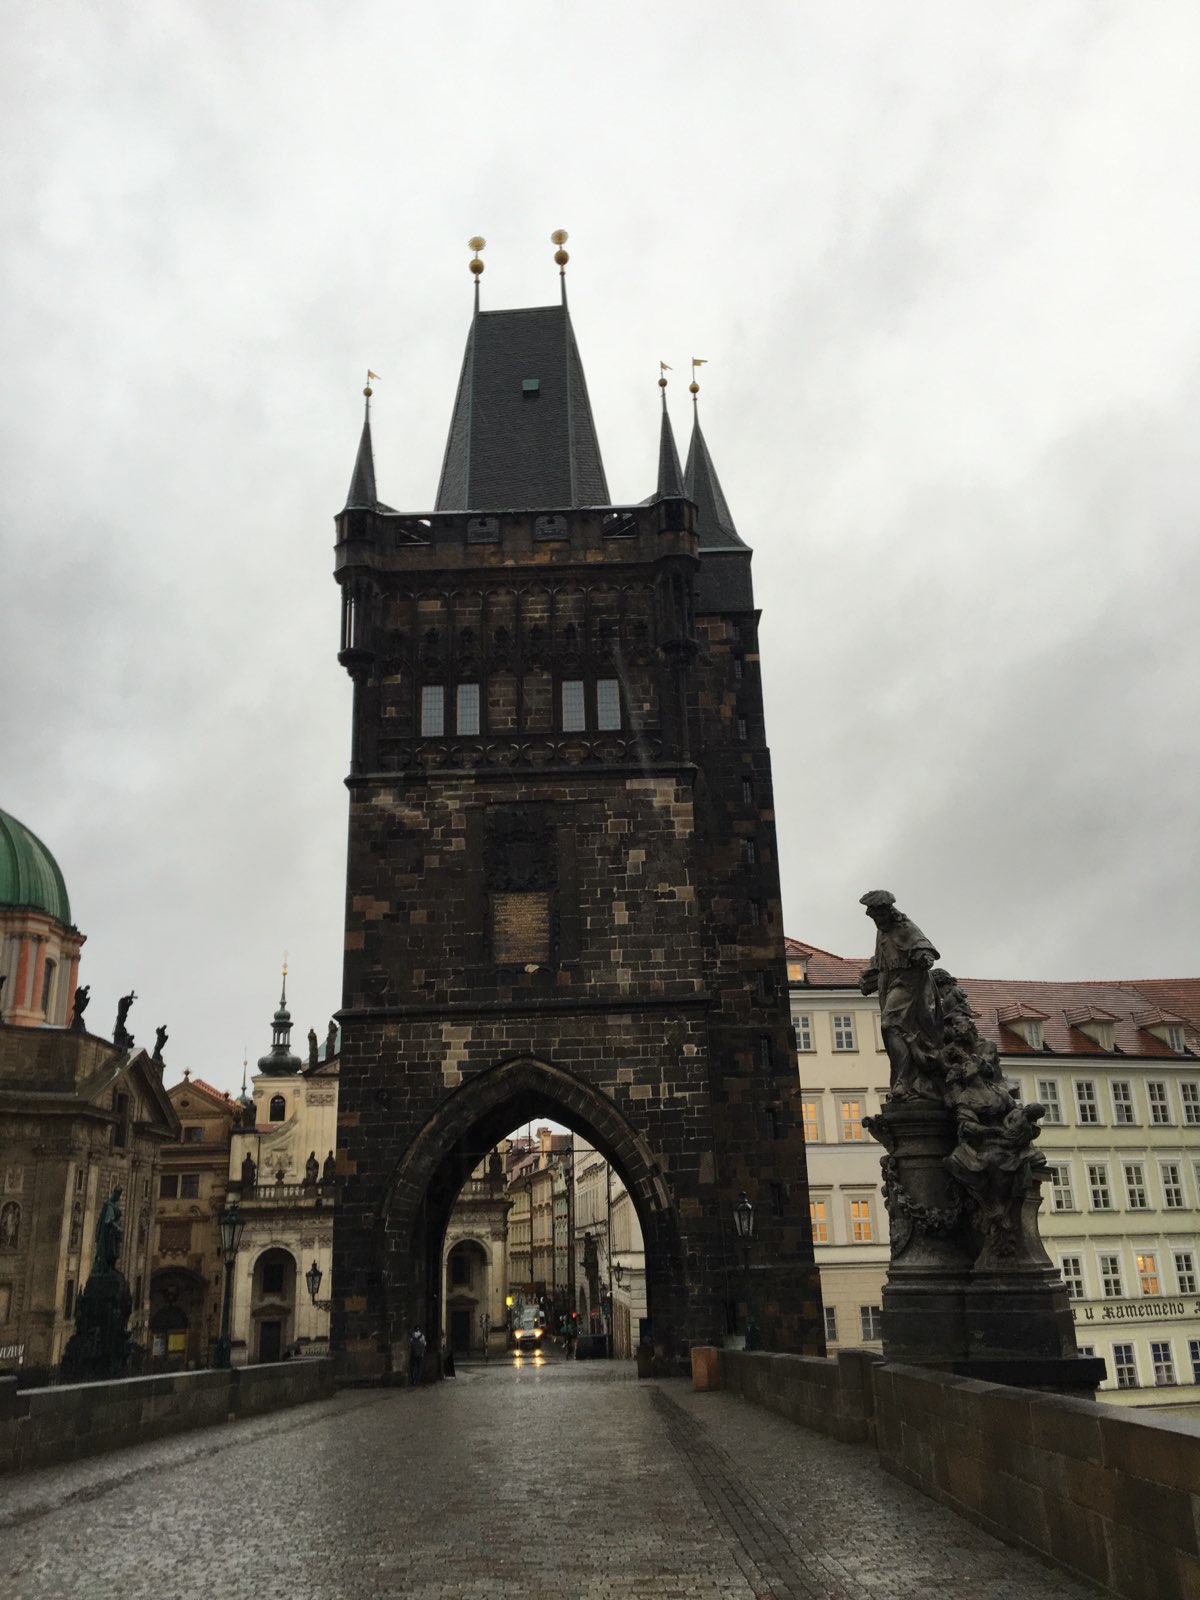 提起布拉格人人都会想到的地方。两端分别是布拉格城堡区和旧城区，以前这里